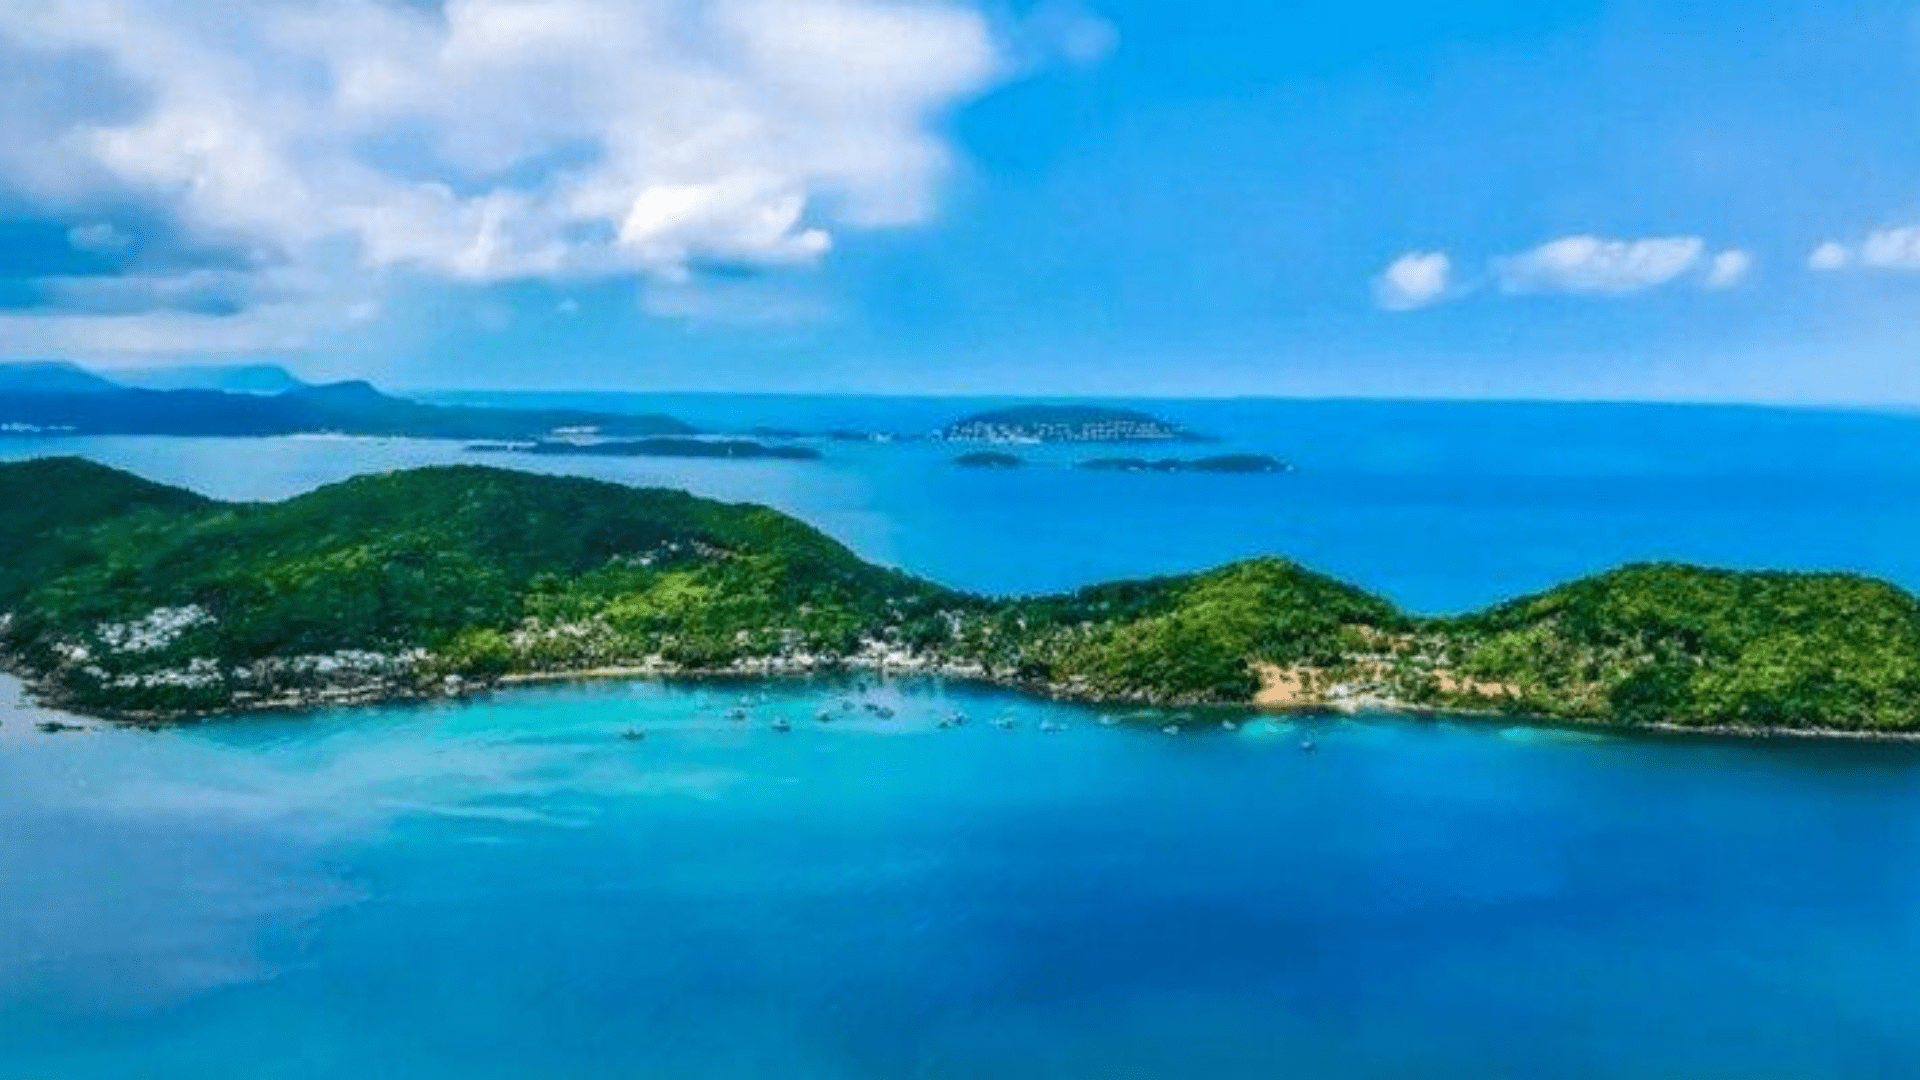 Đảo Hòn Khoai – địa điểm bạn nên đi khi đến Cà Mau